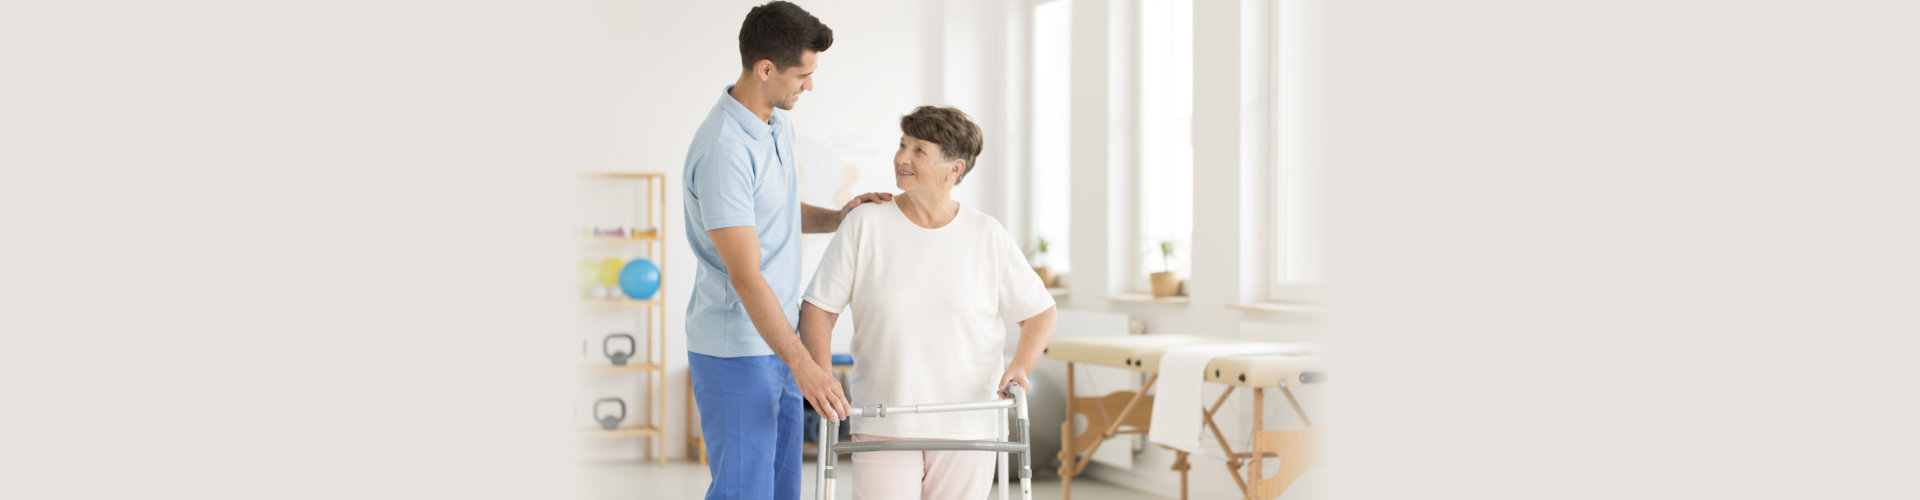 caregiver assist elderly